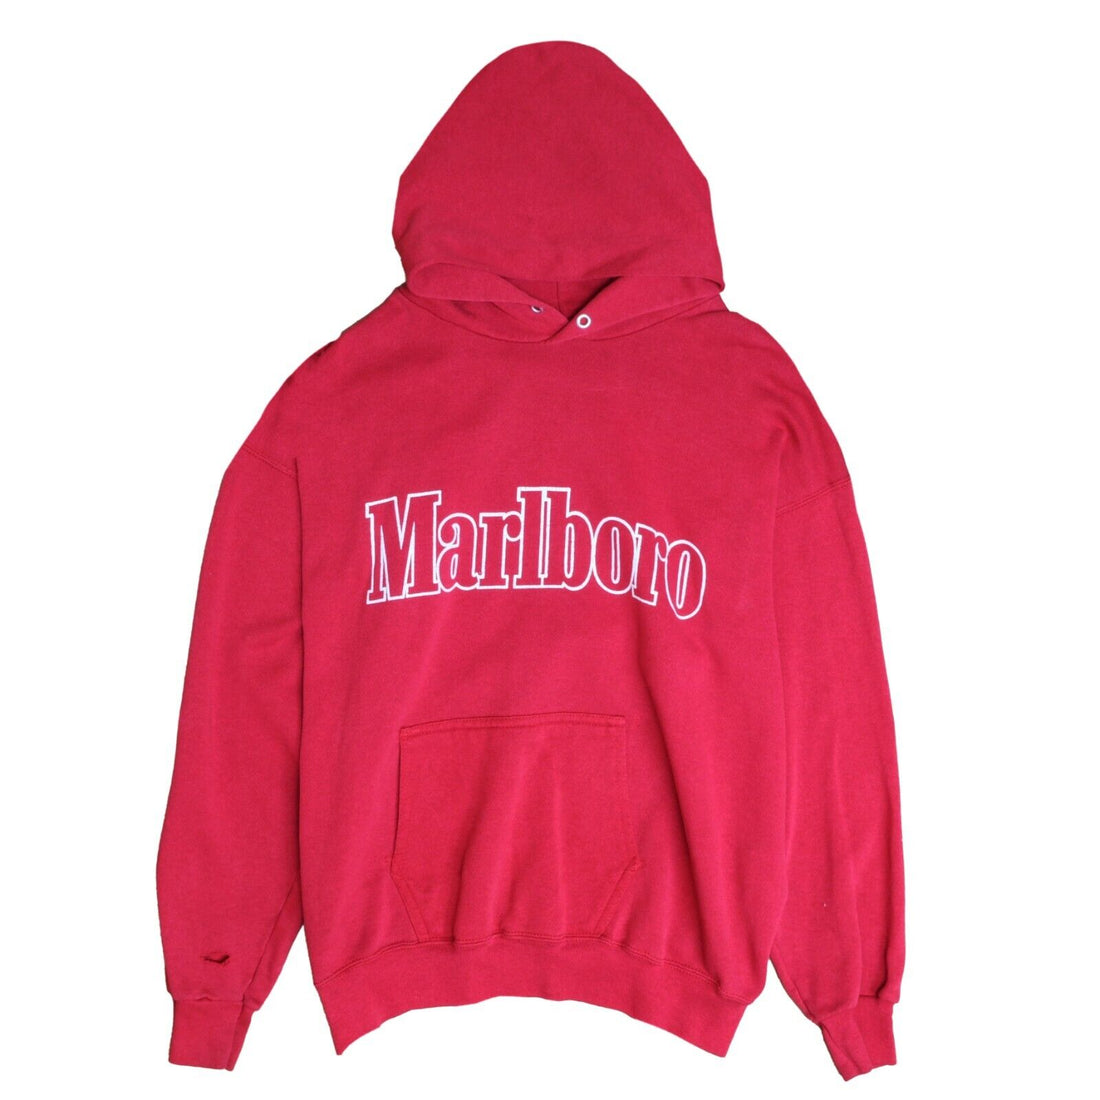 Vintage Marlboro Sweatshirt Hoodie Size Large Cigarette Promo